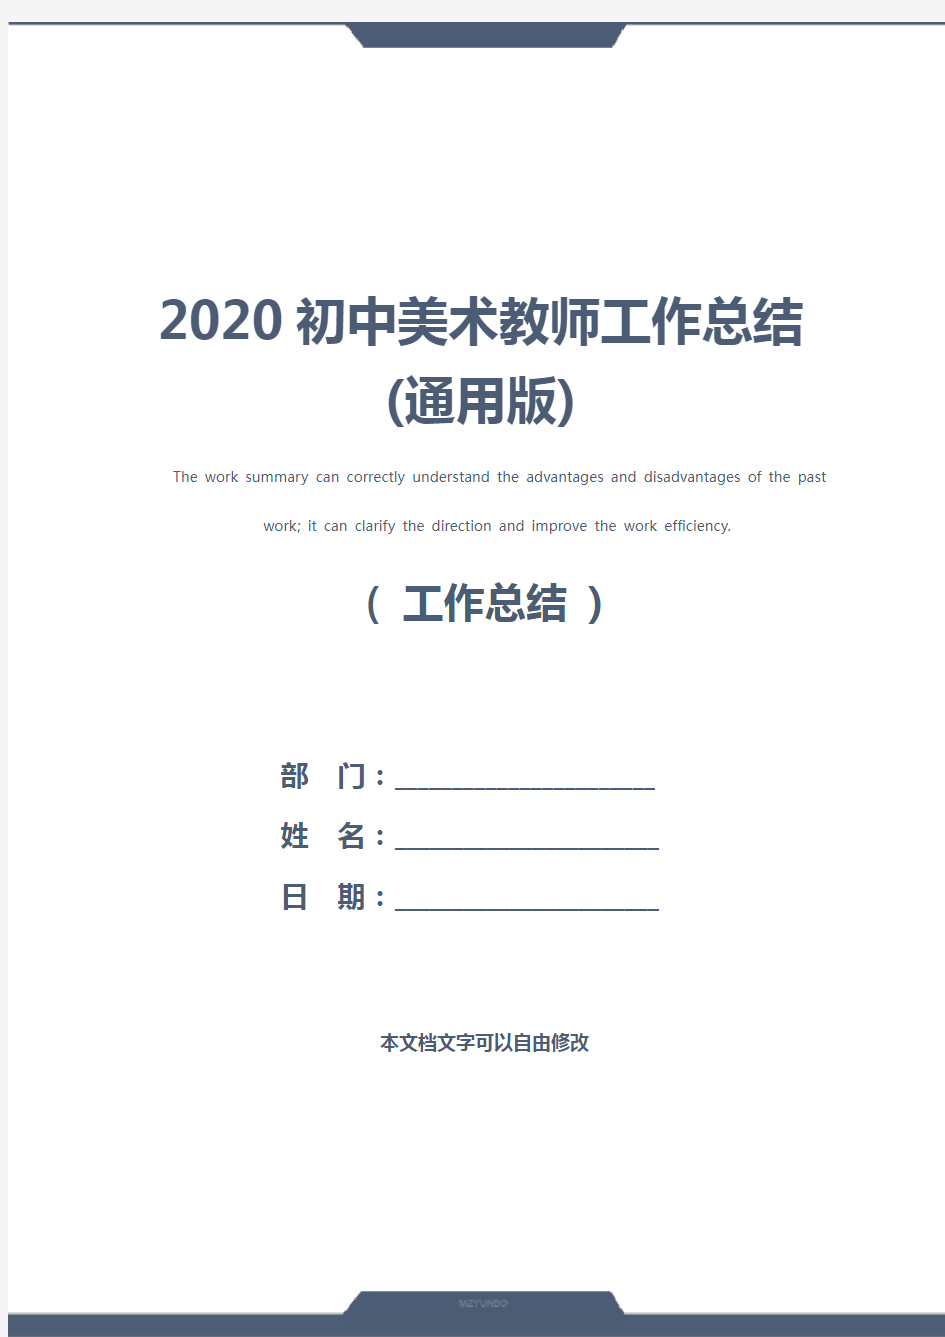 2020初中美术教师工作总结(通用版)